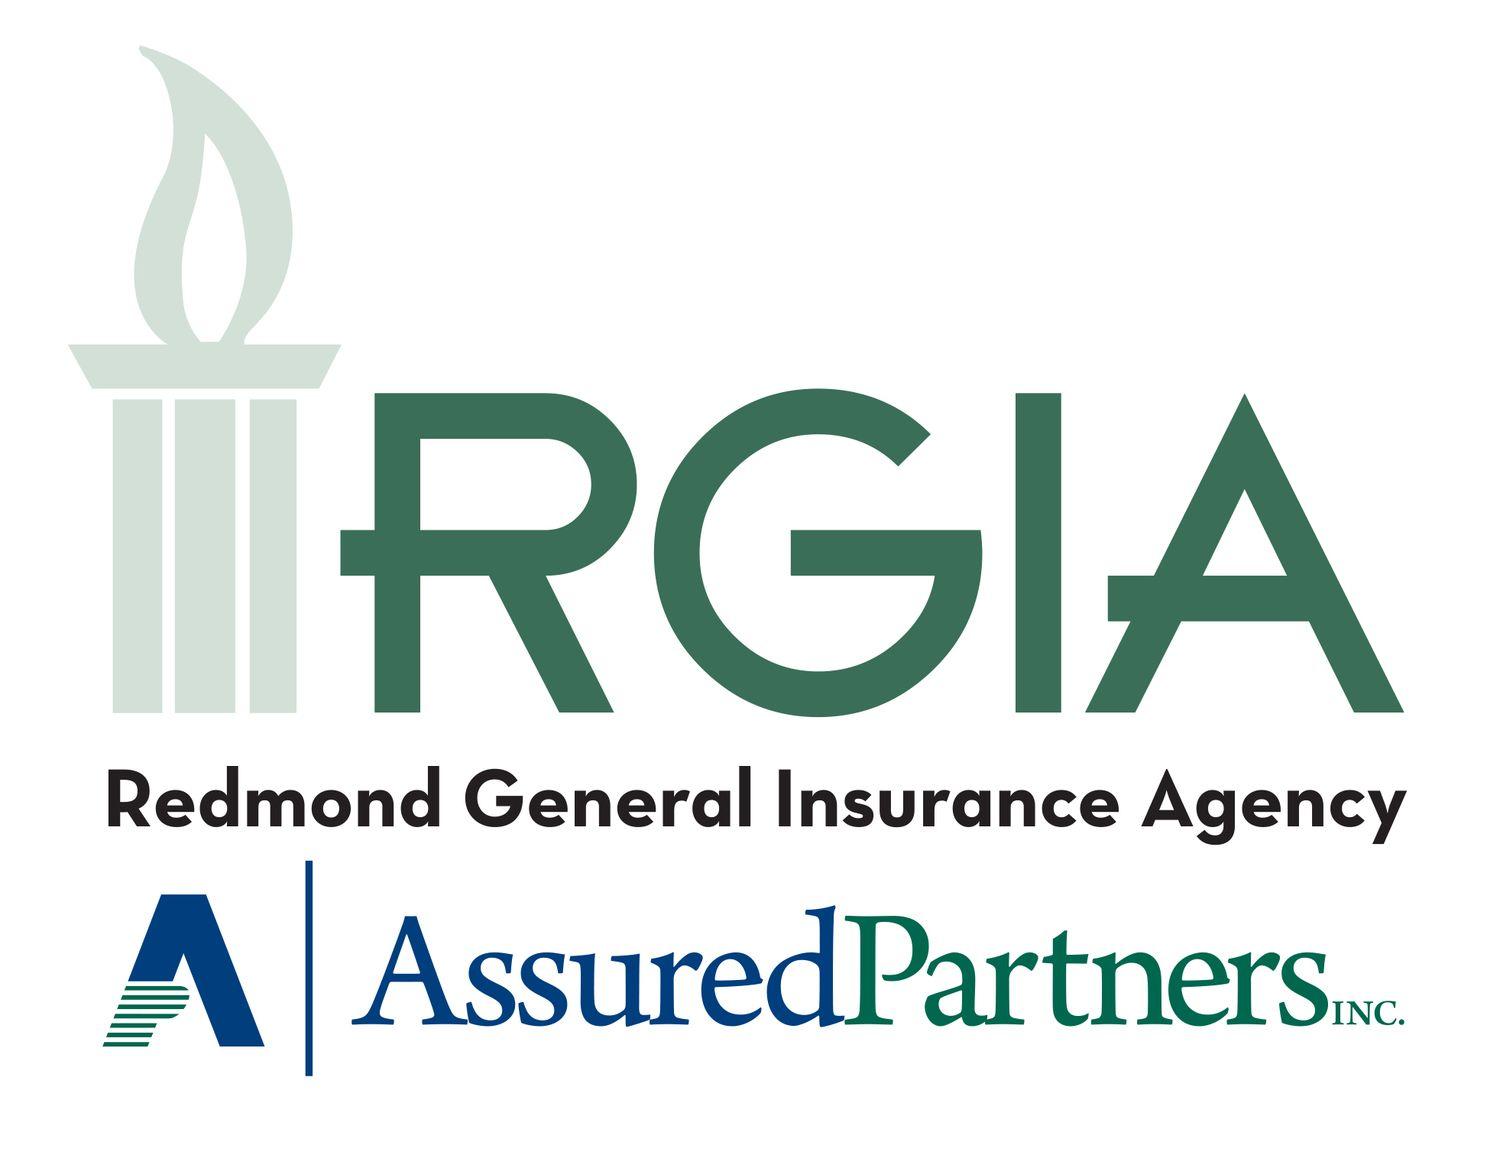 Umbrella Insurance Company with Logo - Commercial Umbrella Insurance — Redmond General Insurance Agency